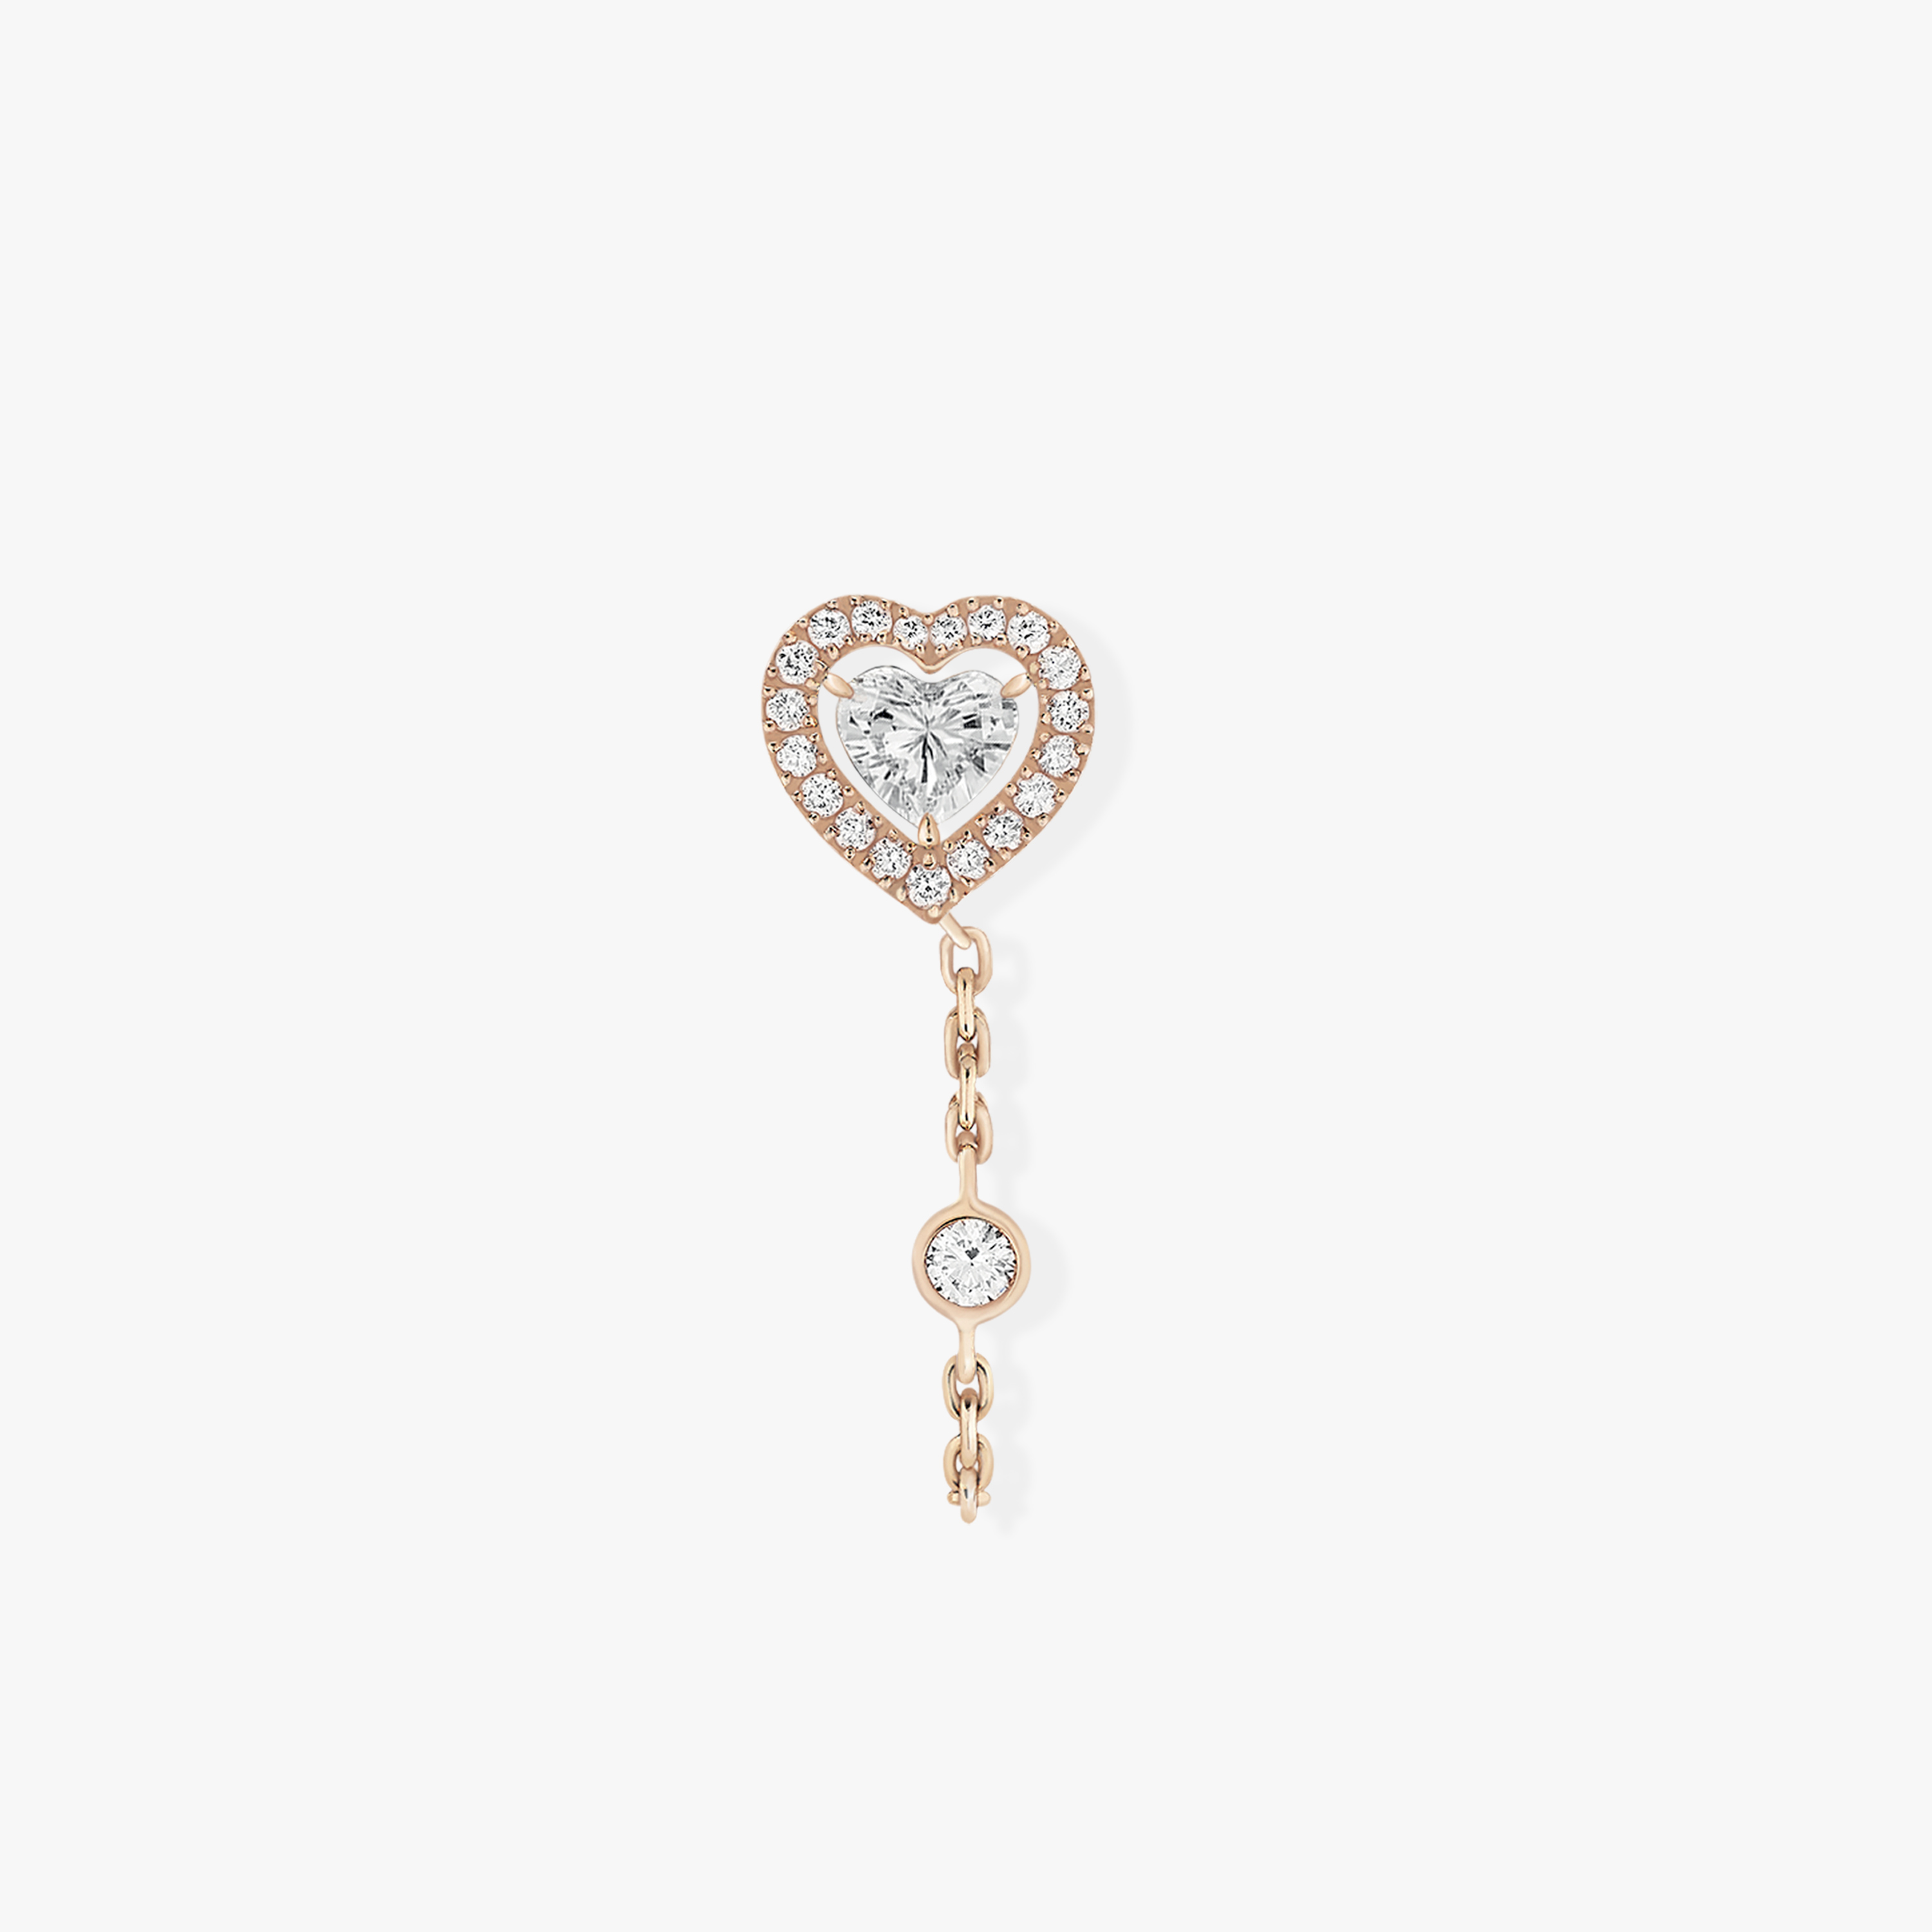 Pendiente Mujer Oro rosa Diamante Pendiente individual de cadena con diamante de corazón de 0,15 ct Joy 11557-PG